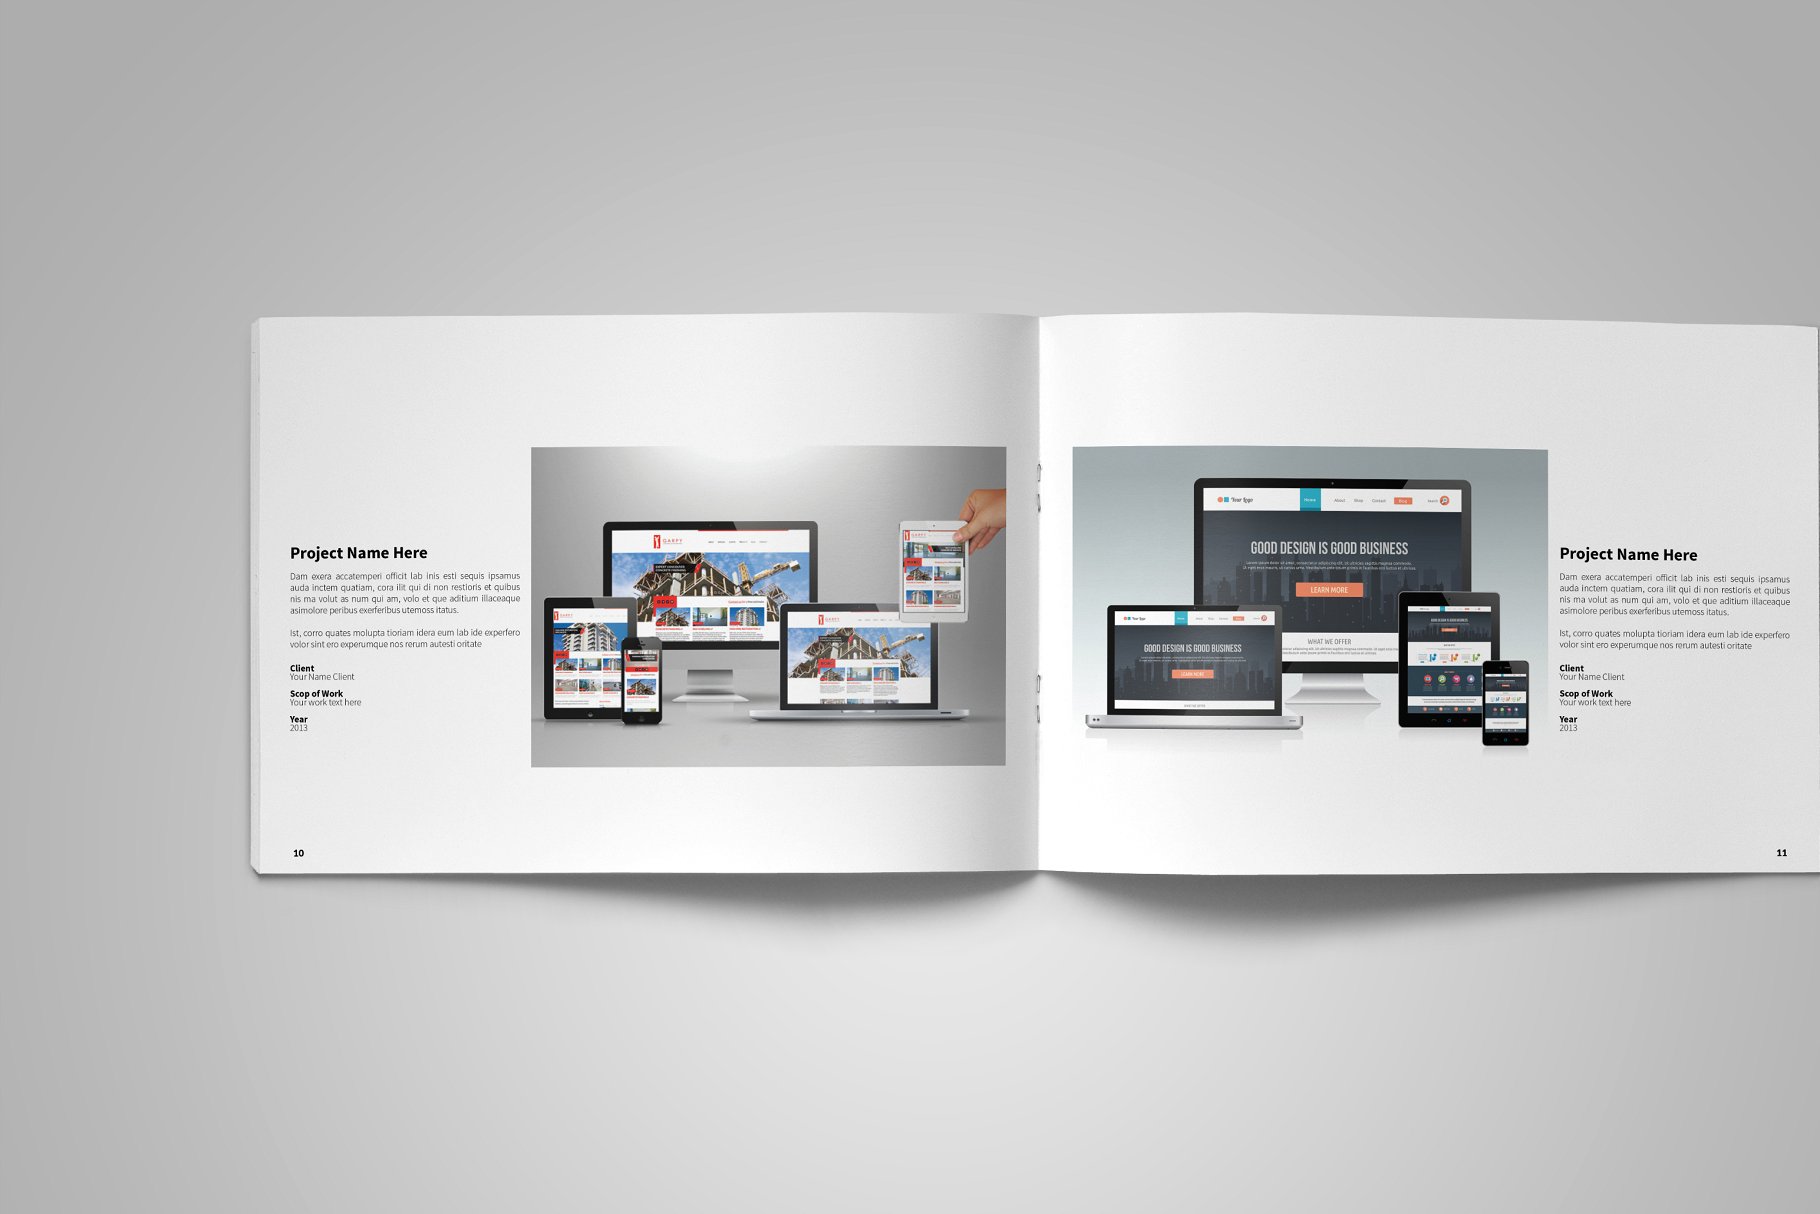 平面设计作品集画册相册模板 Graphic Design Portfolio Template插图(7)